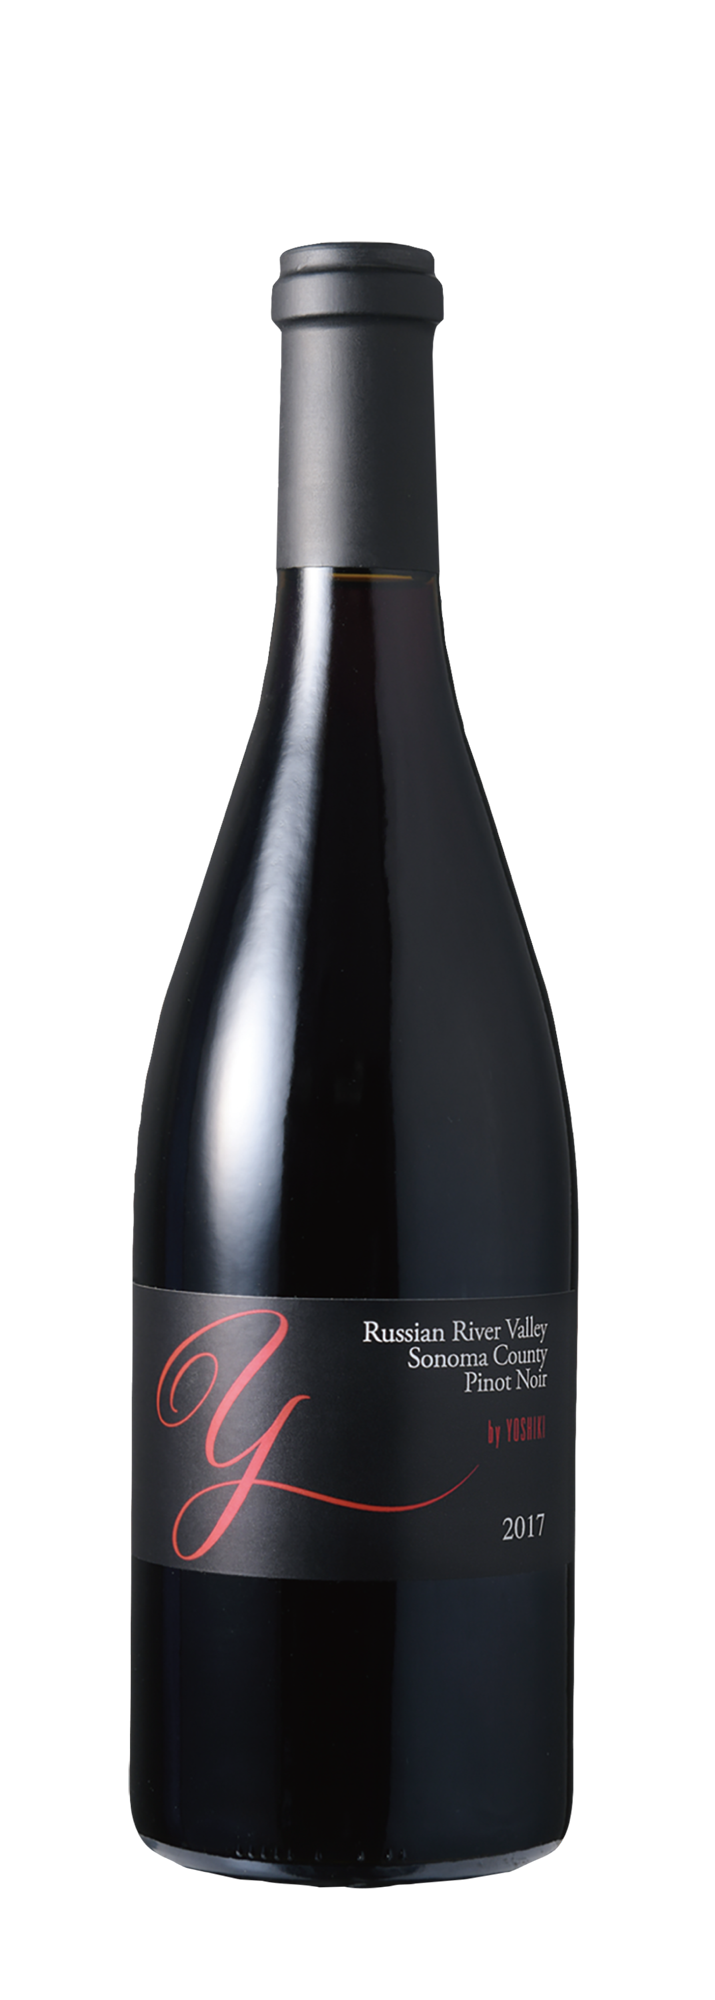 Russian River Valley Pinot Noir 2017